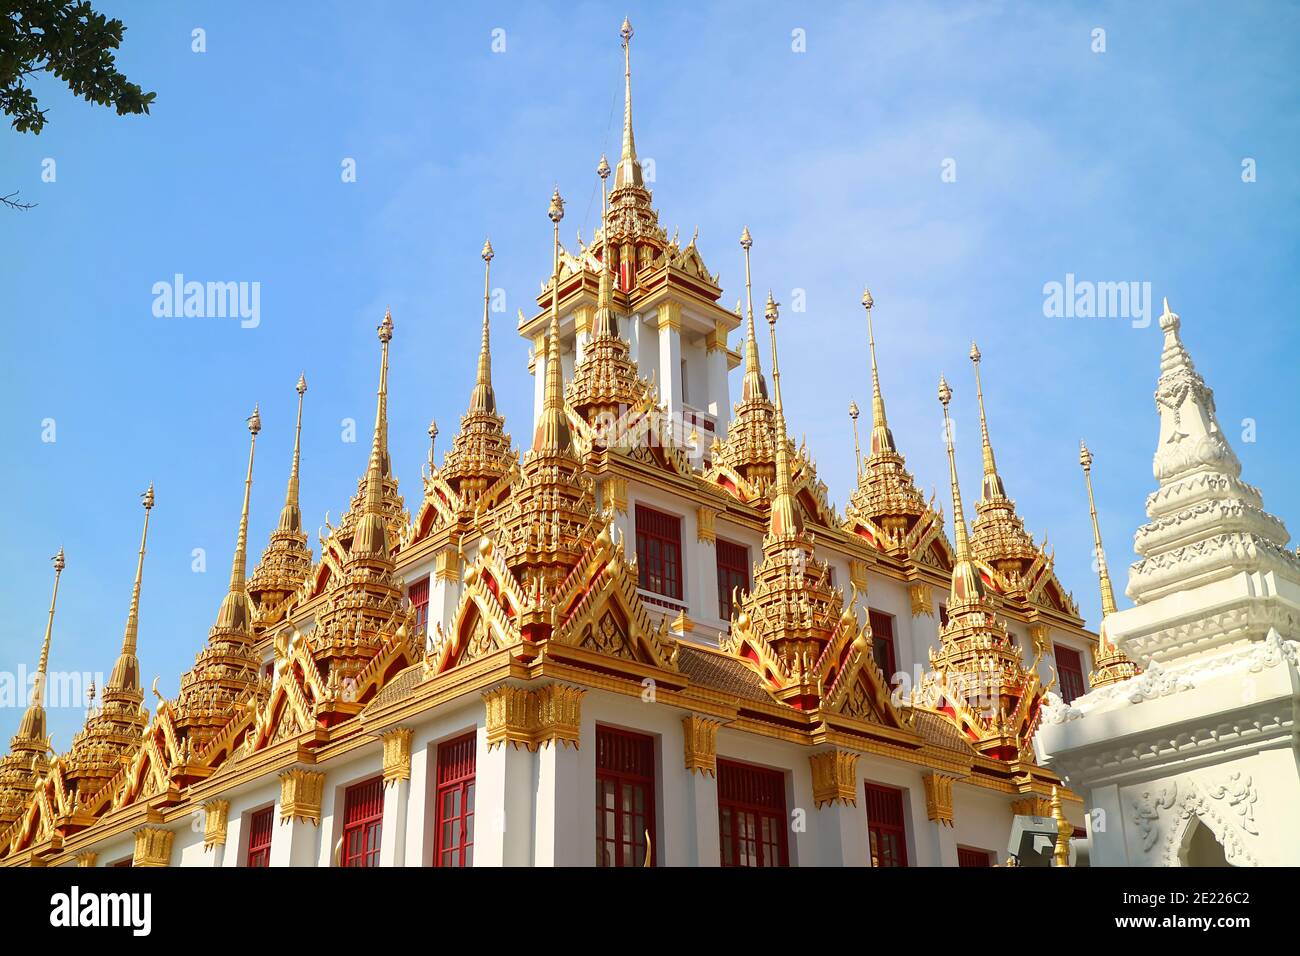 Spectaculaires pics d'or de l'historique Loha Prasat (château de fer) à l'intérieur du temple Wat Ratchanatdaram situé dans la vieille ville de Bangkok, en Thaïlande Banque D'Images